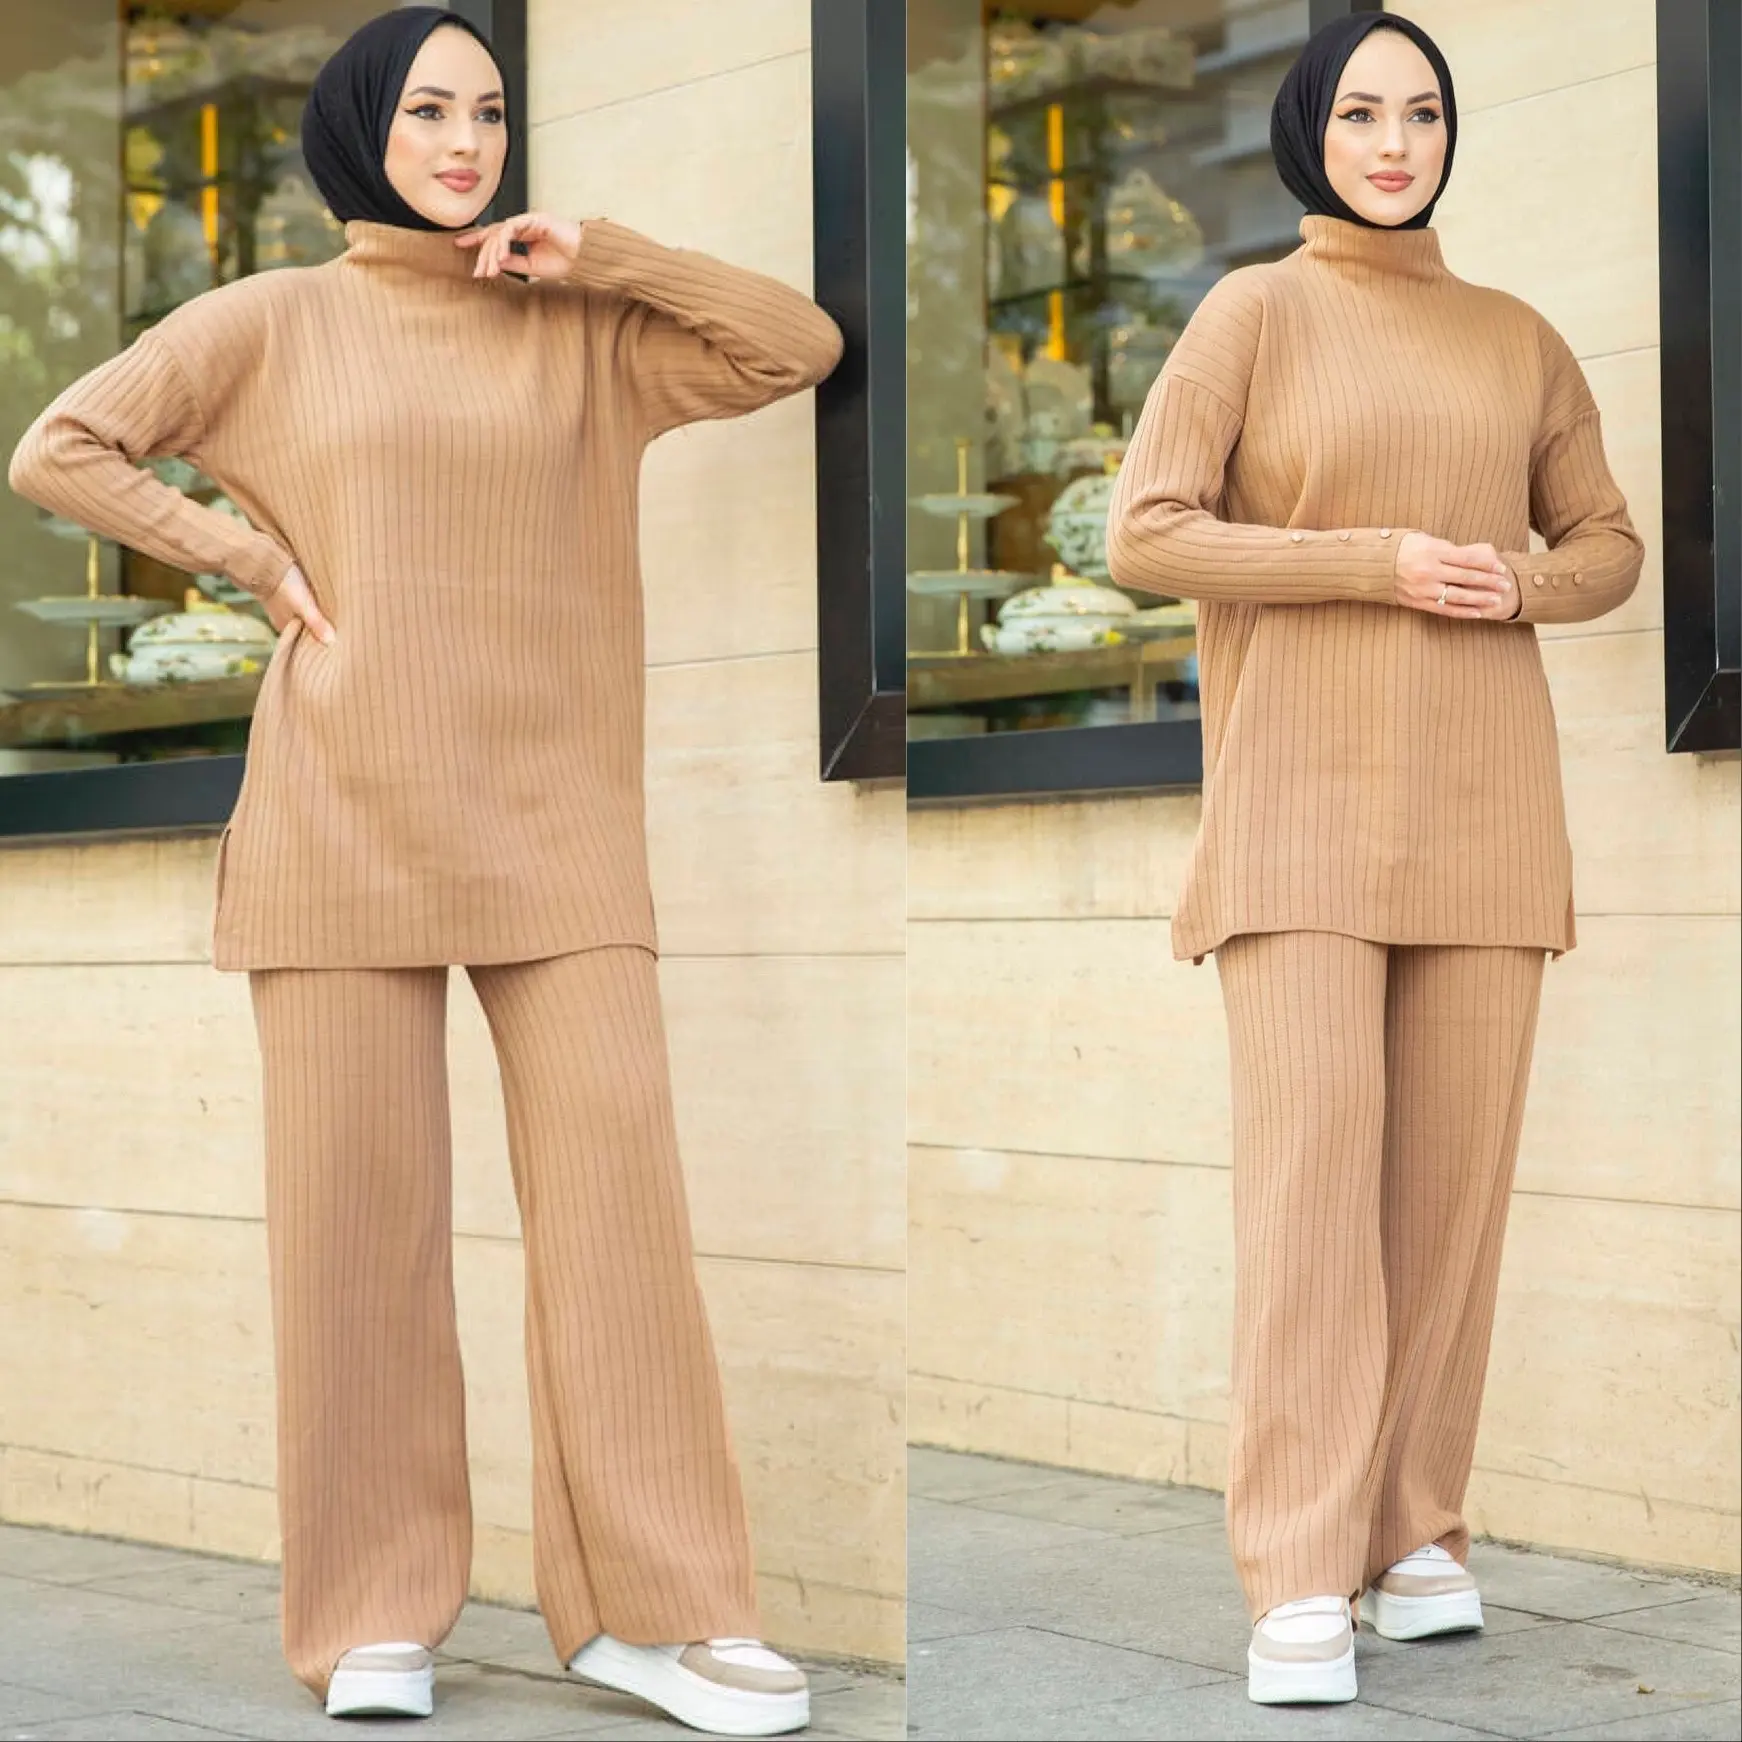 Kış türkiye 2 parça kadın örgü seti balıkçı yaka üstleri geniş bacak pantolon triko bluz müslüman uzun elbise Dubai 2 parça islam giyim